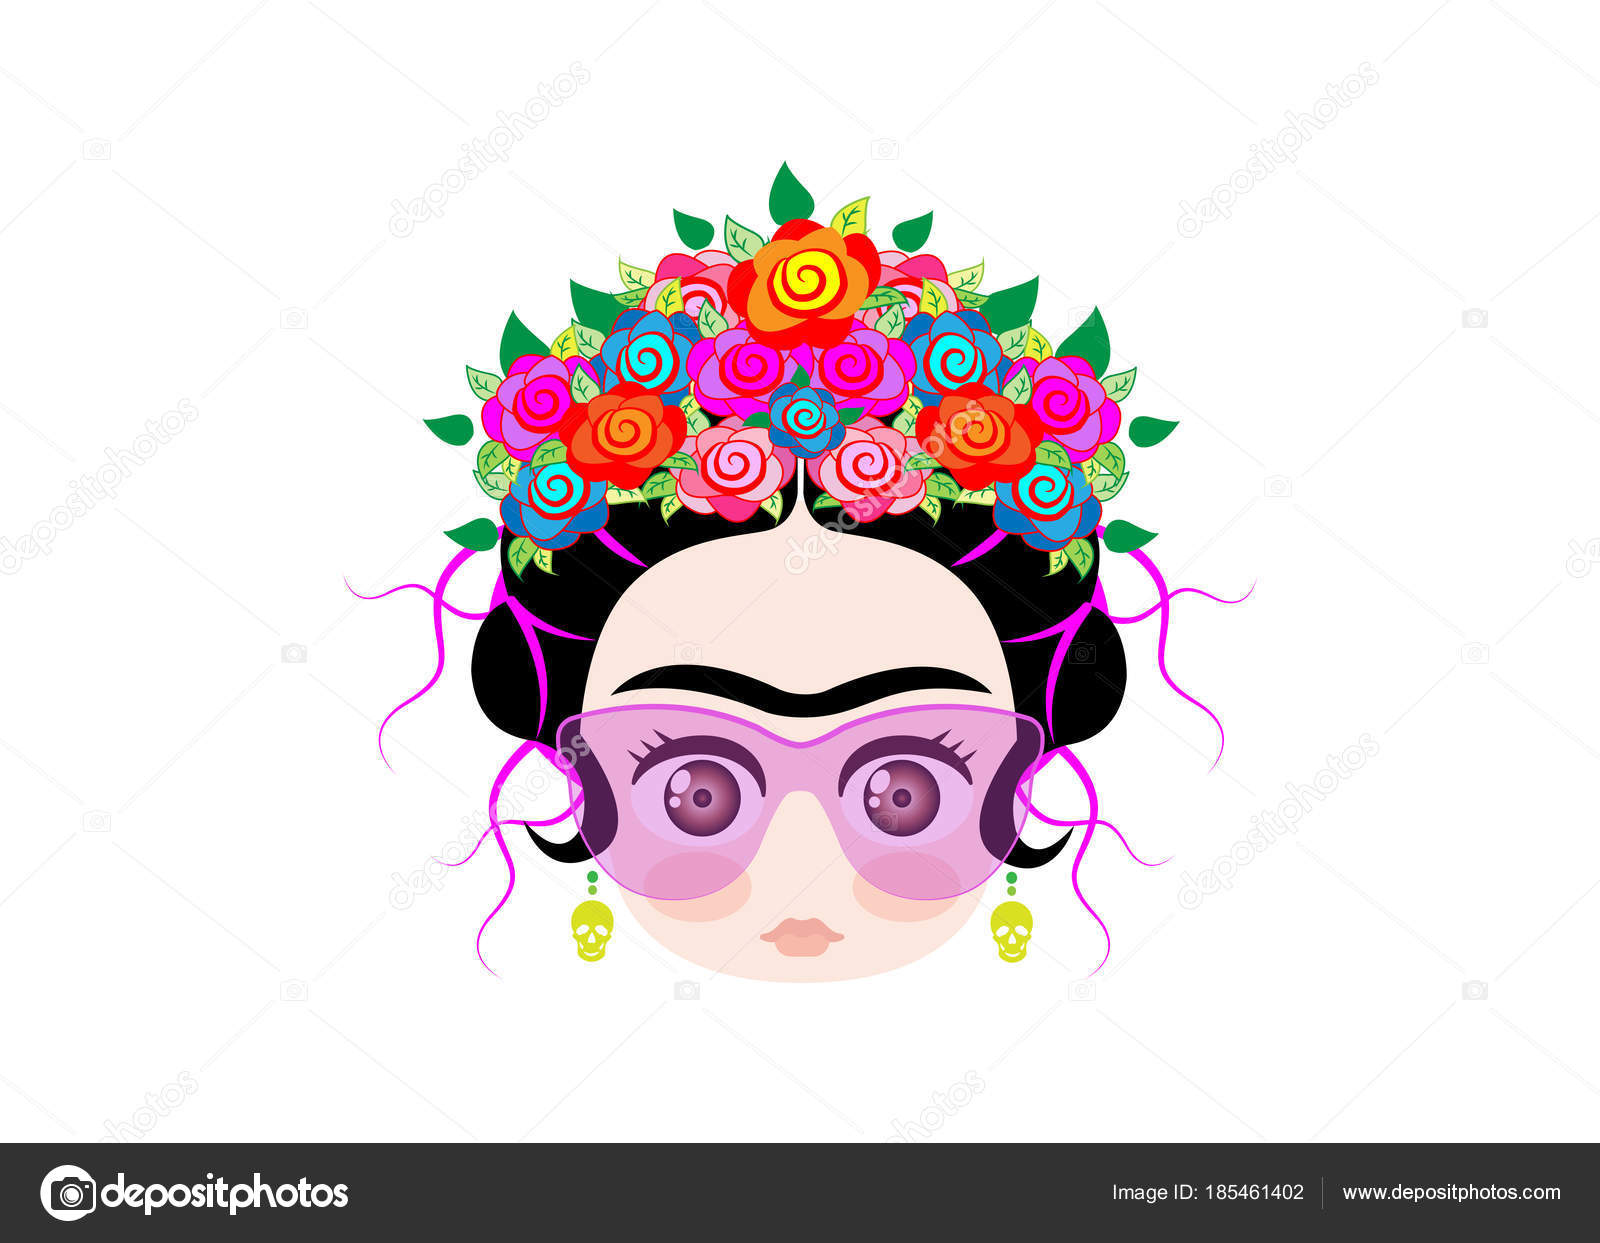 Download Emoji baby frida kahlo met kroon van kleurrijke bloemen en glazen, vectorillustratie geïsoleerd ...